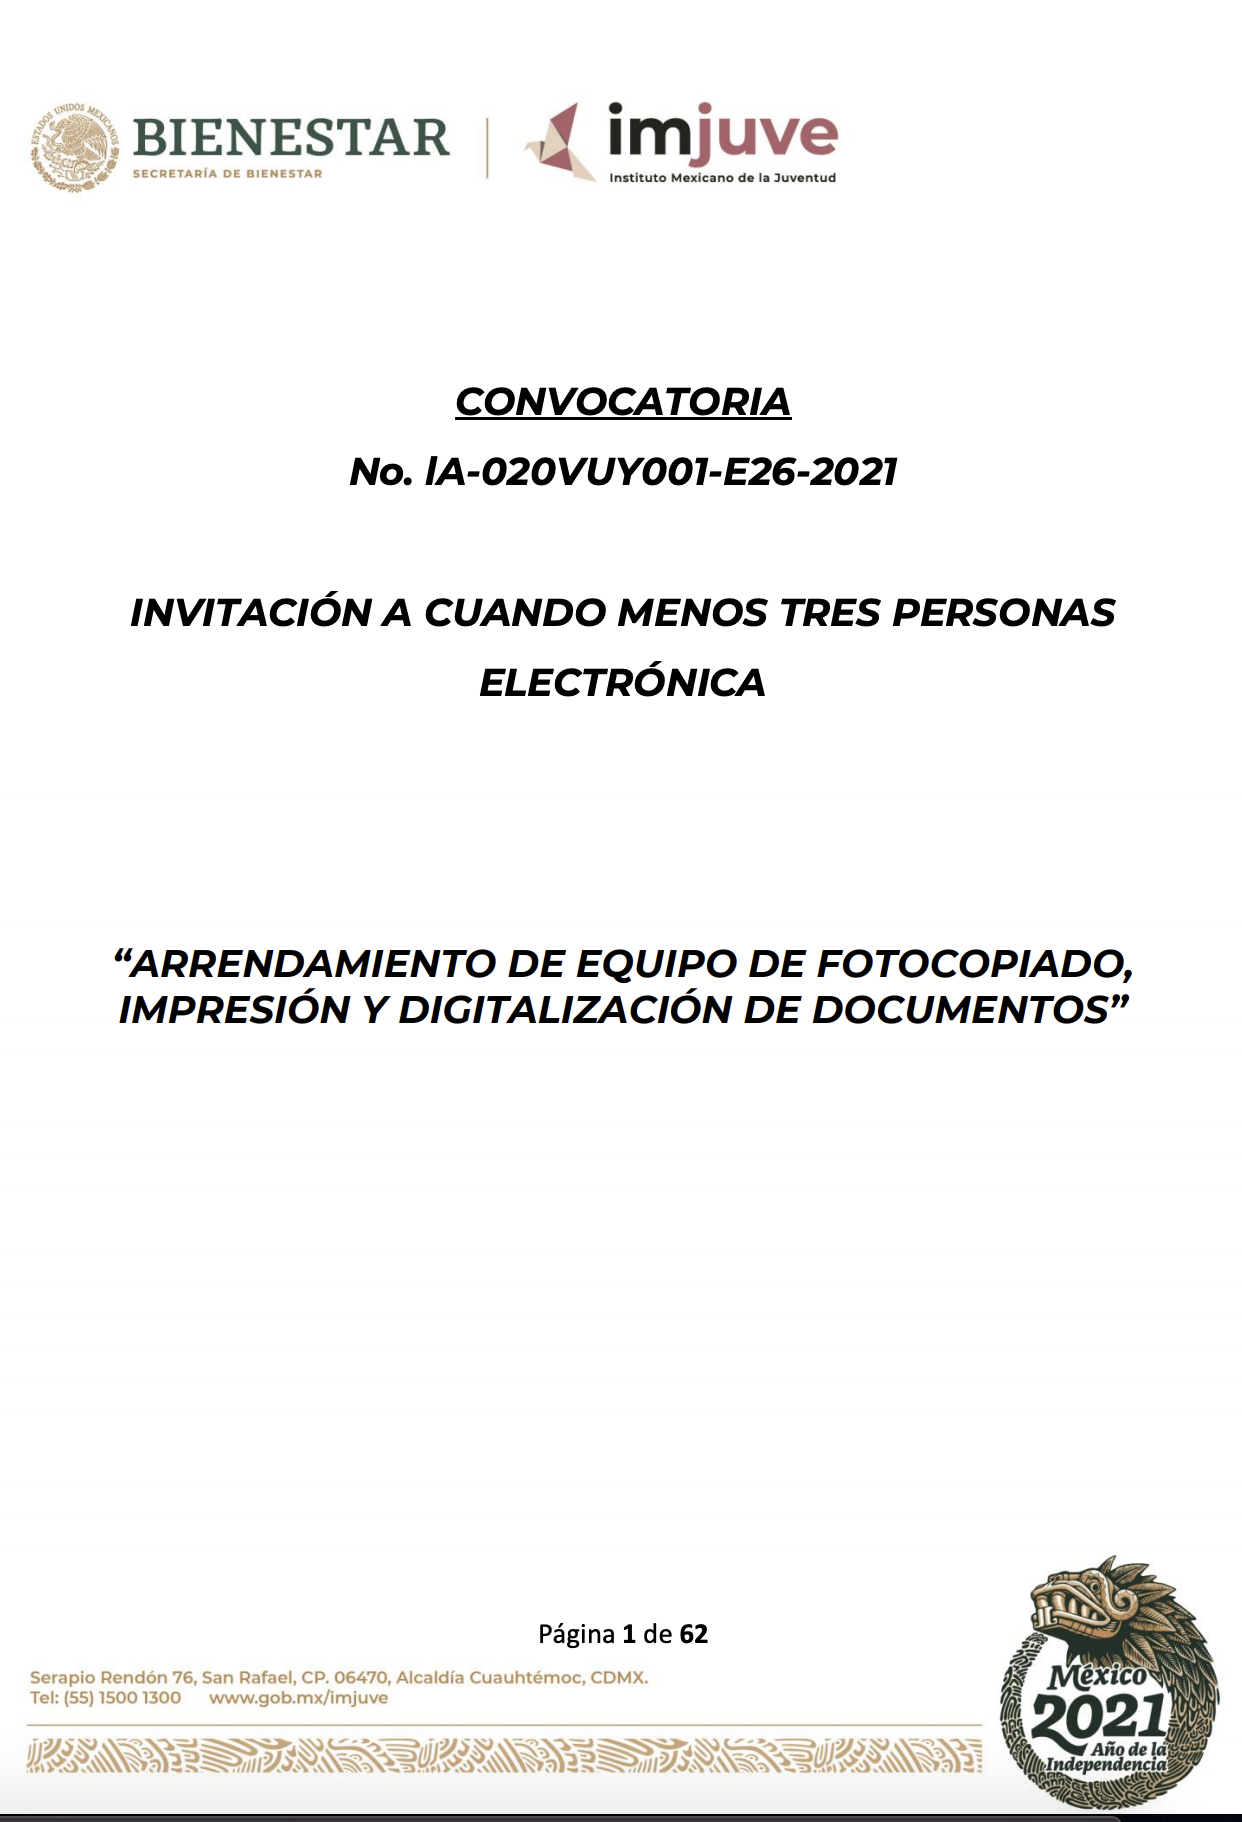 Convocatoria No. lA 020VUY001 E26 2021 Arrendamiento de equipo de fotocopiado, impresión y digitalización de documentos